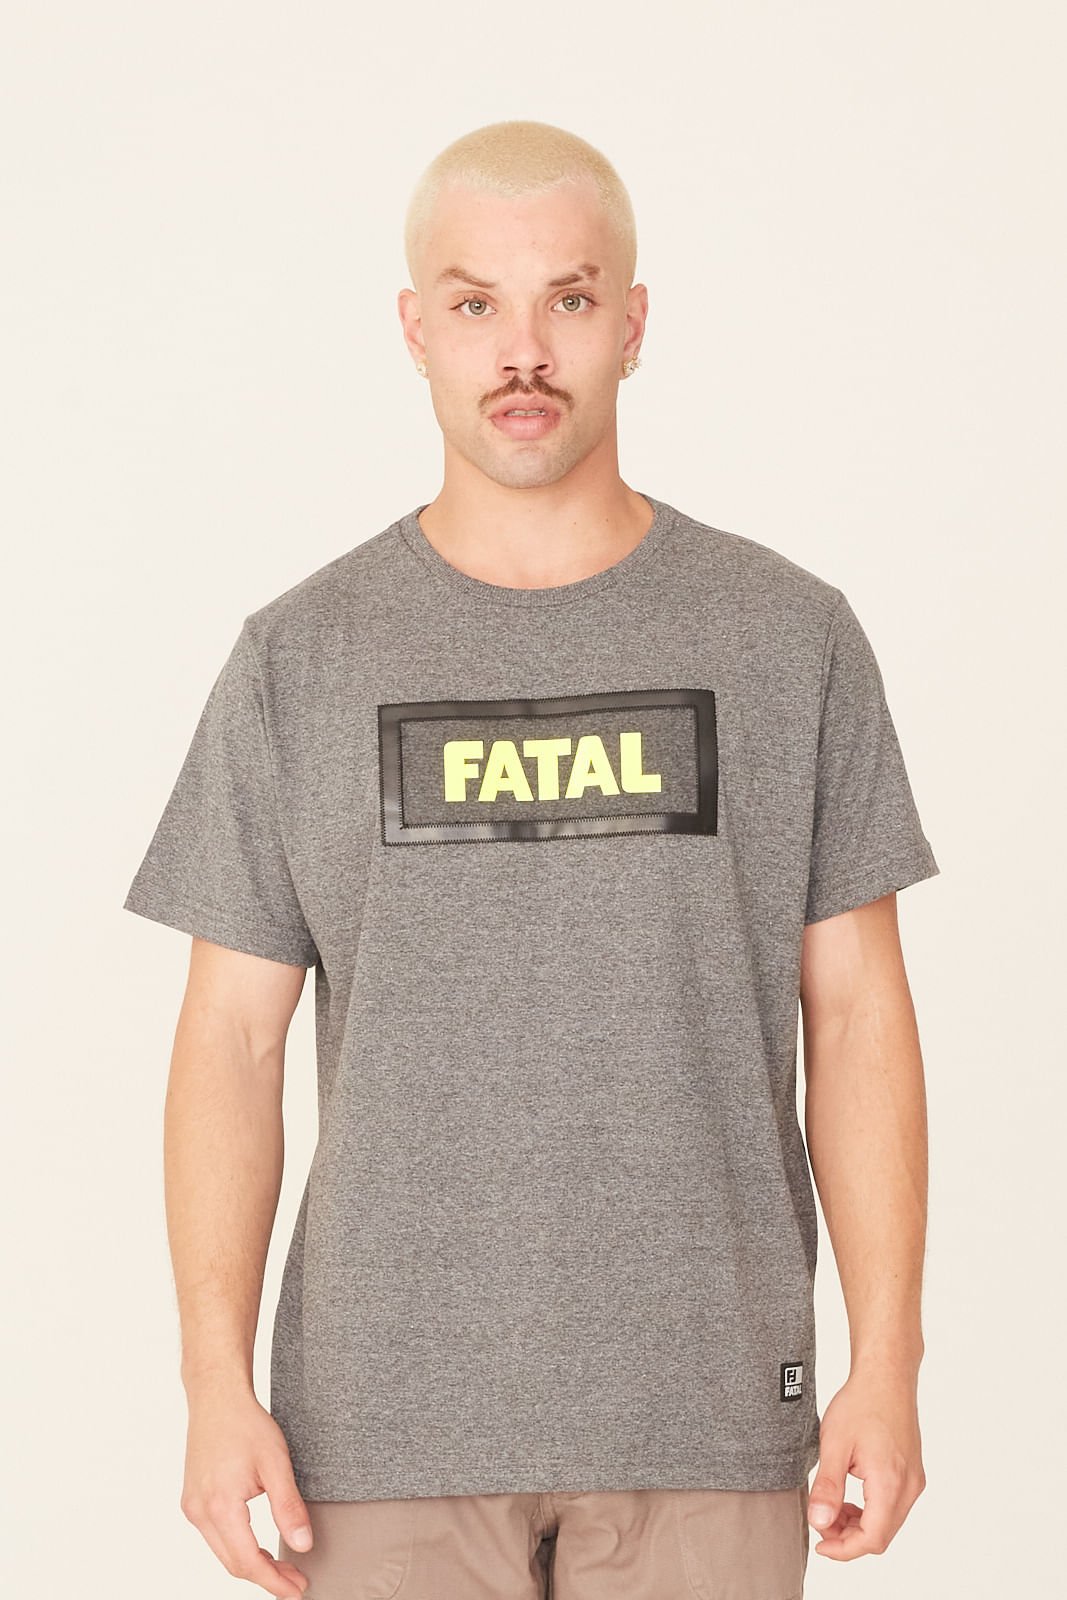 Camiseta Fatal Especial Cinza Mescla Escuro